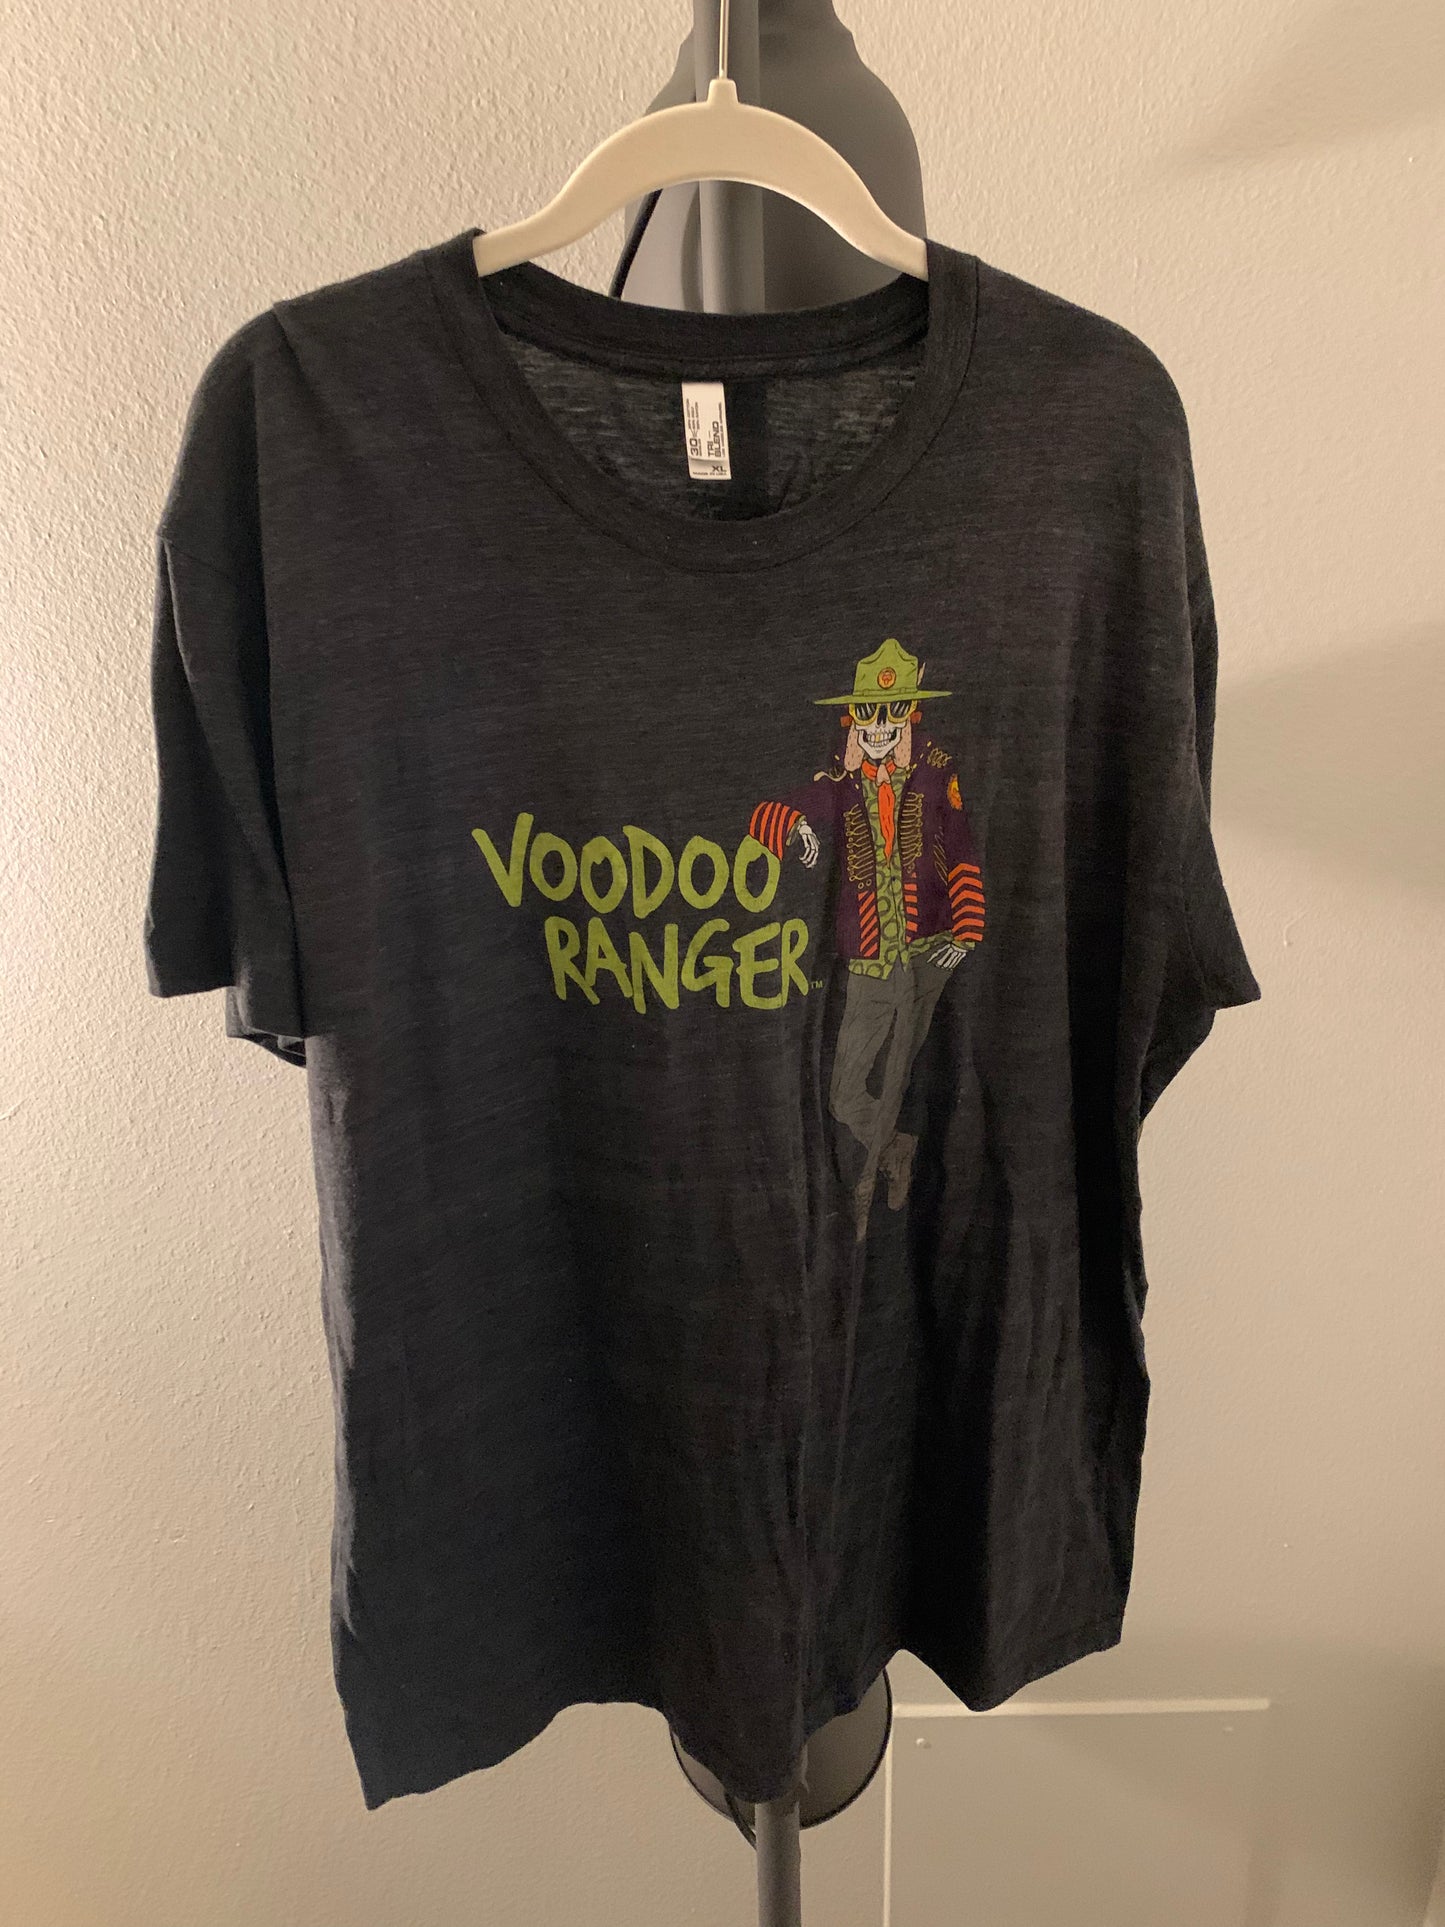 Voodoo Ranger tee